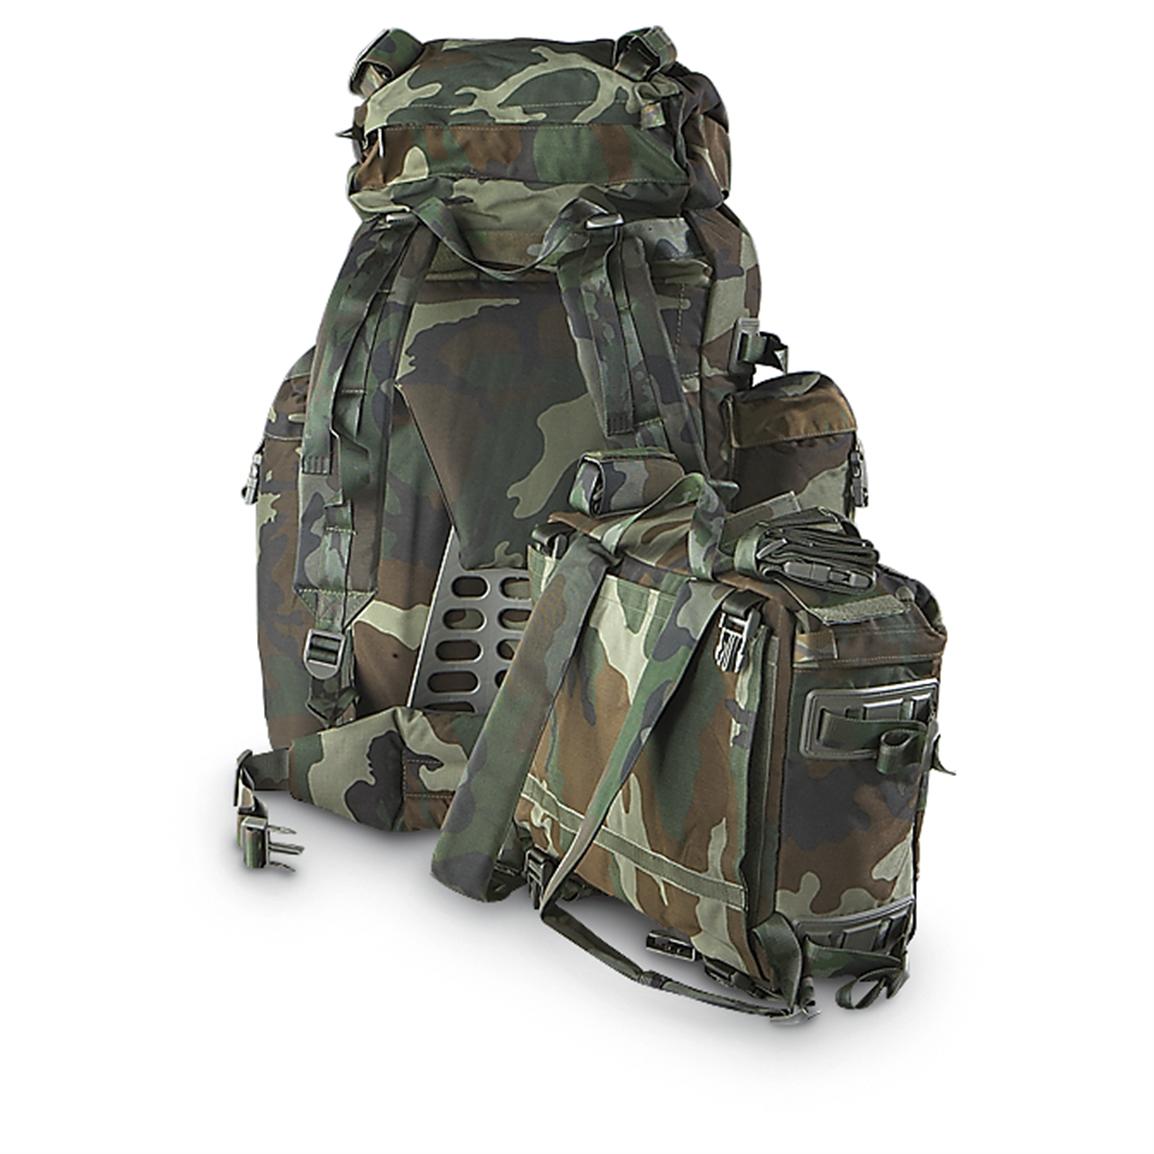 Used Italian Military Combat Rucksack, Camo - 171728, Rucksacks & Backpacks at Sportsman&#39;s Guide